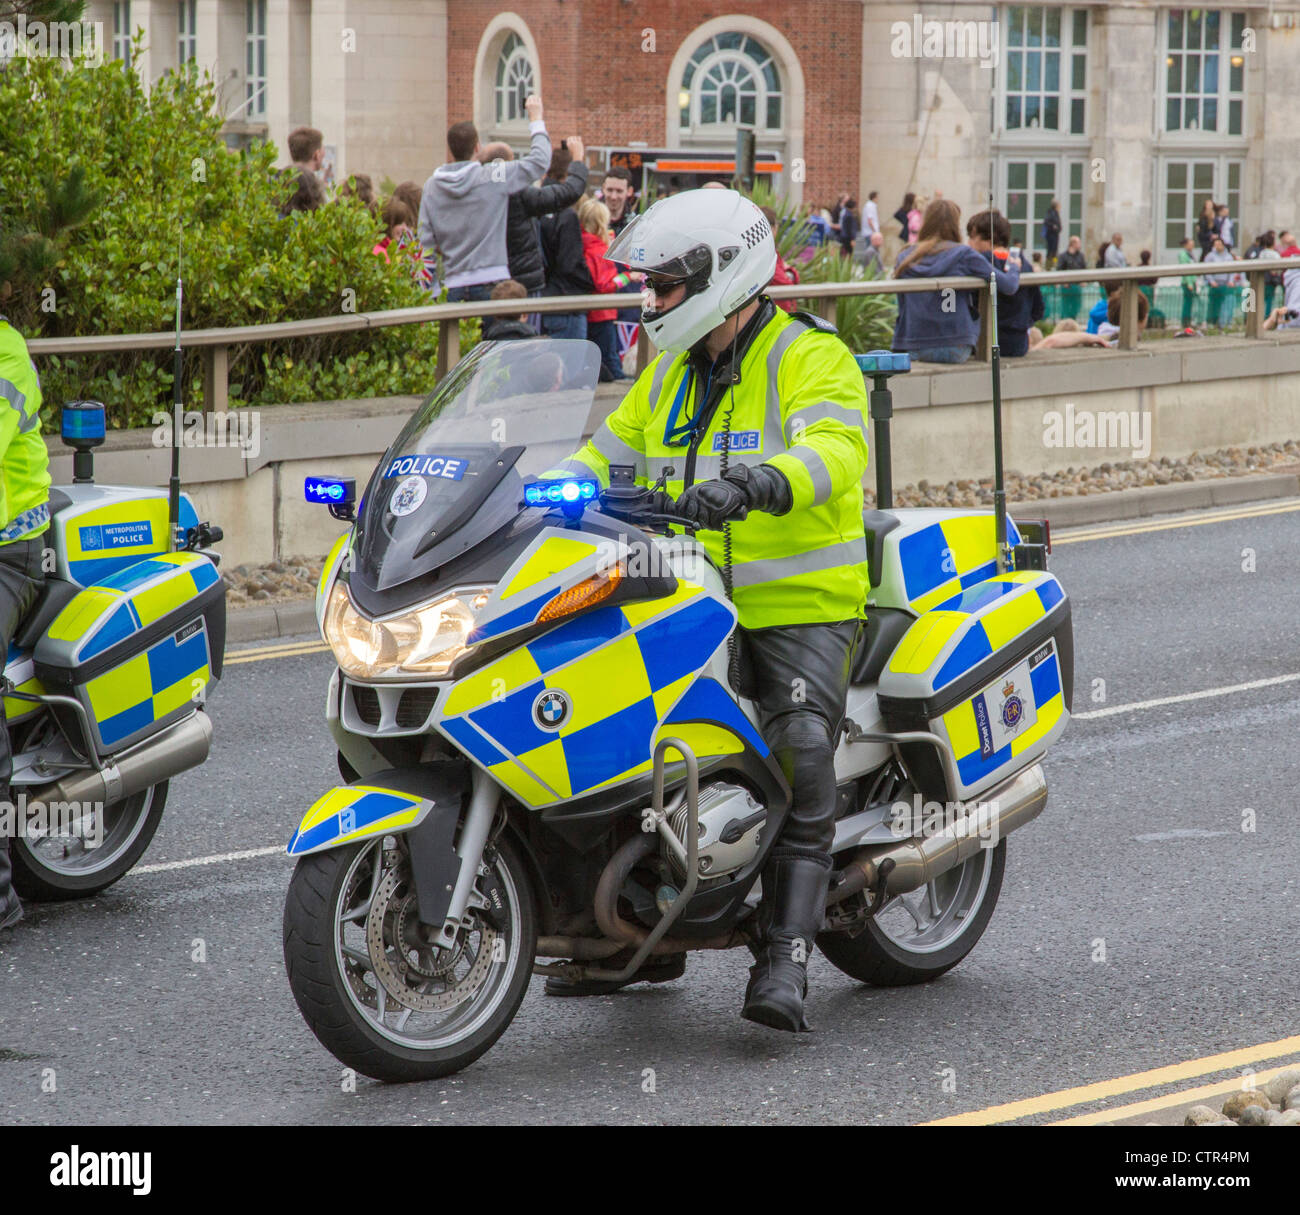 Motocycliste de la Police à cheval sur sa moto, à l'arrêt sur la chaussée, Dorset, England, UK Banque D'Images